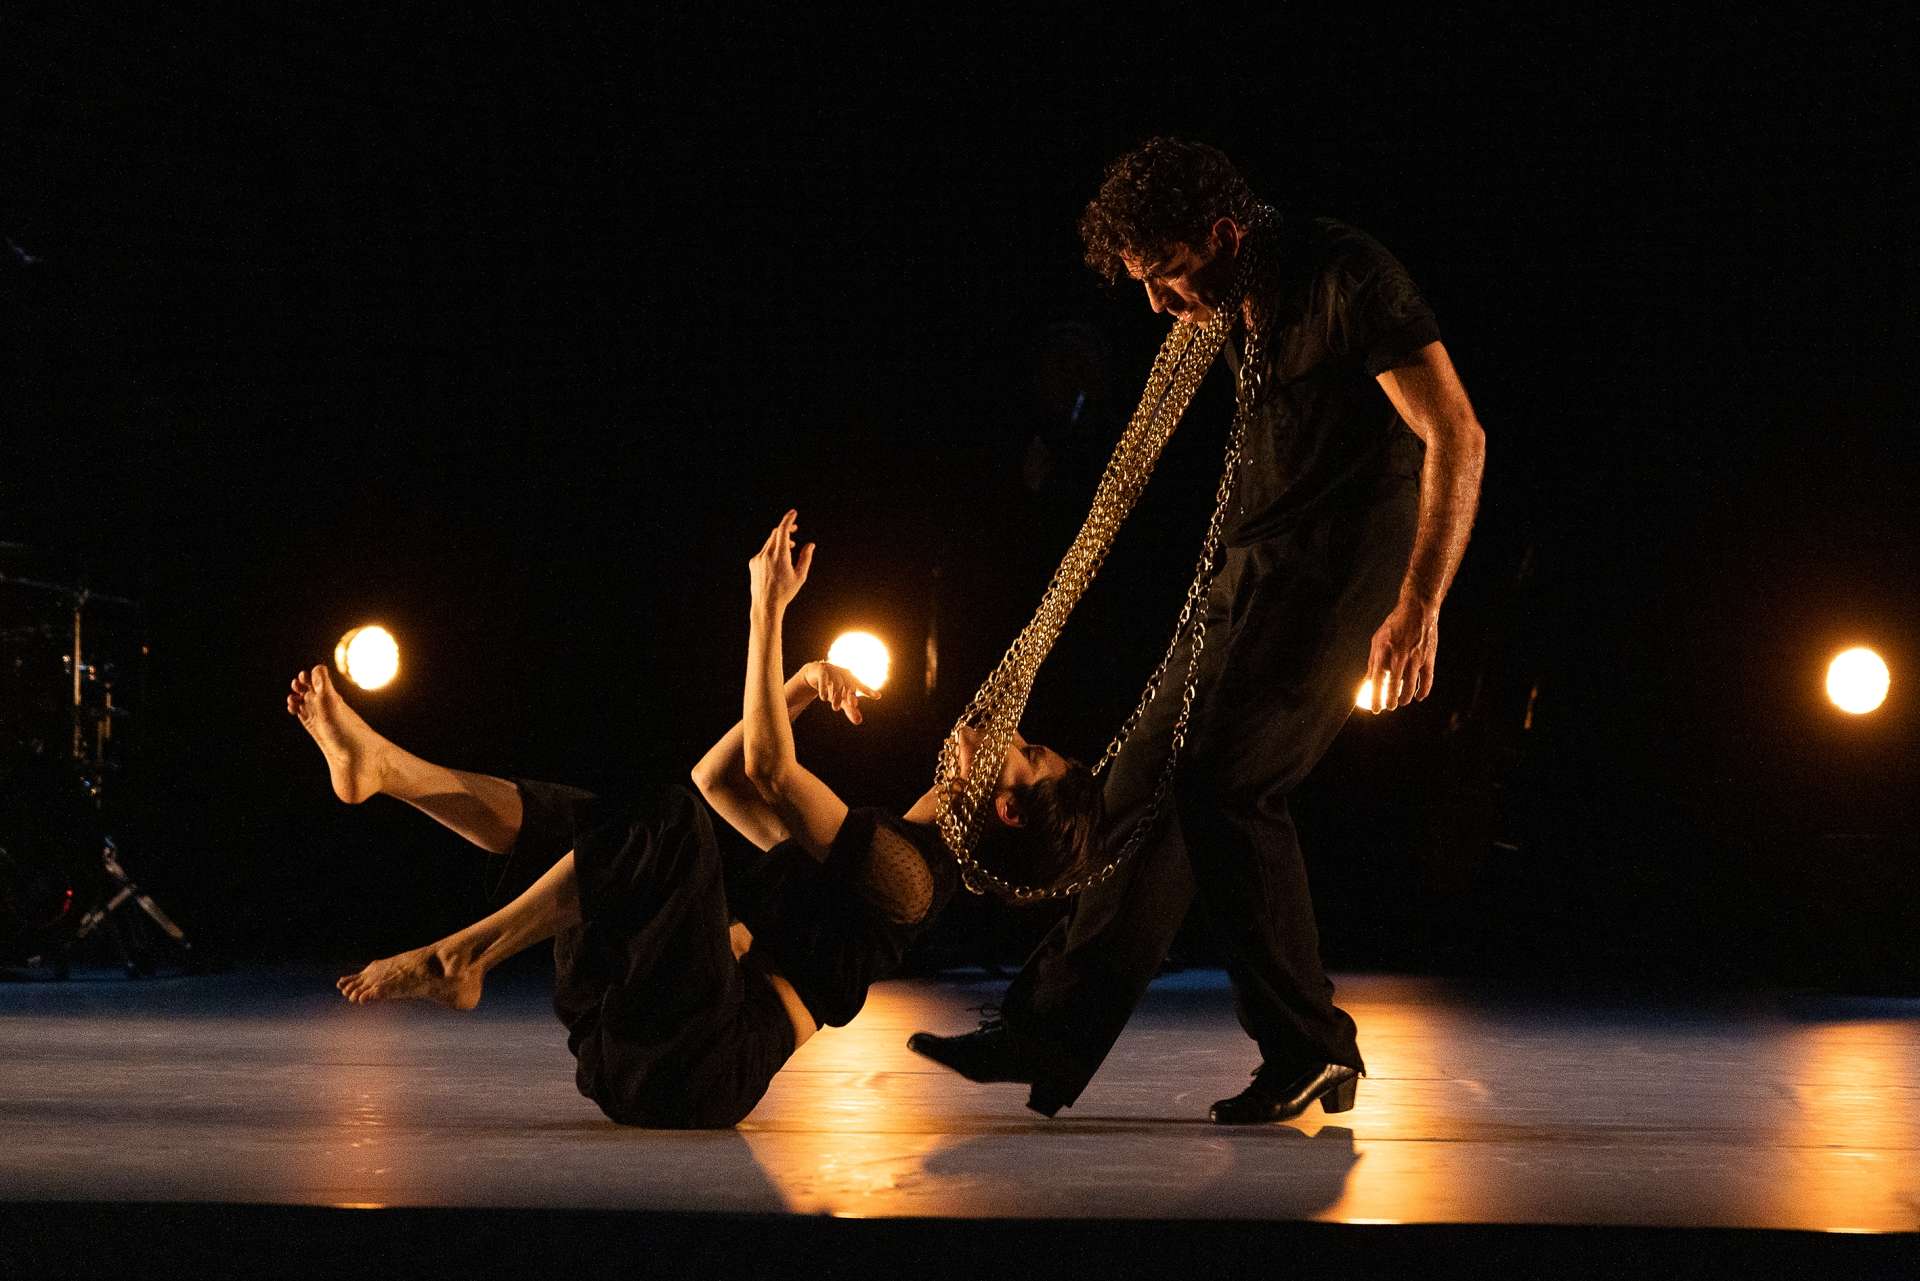 Le duo danse en pleine lumière, David Coria est debout alors que Jann Gallois évolue au sol.